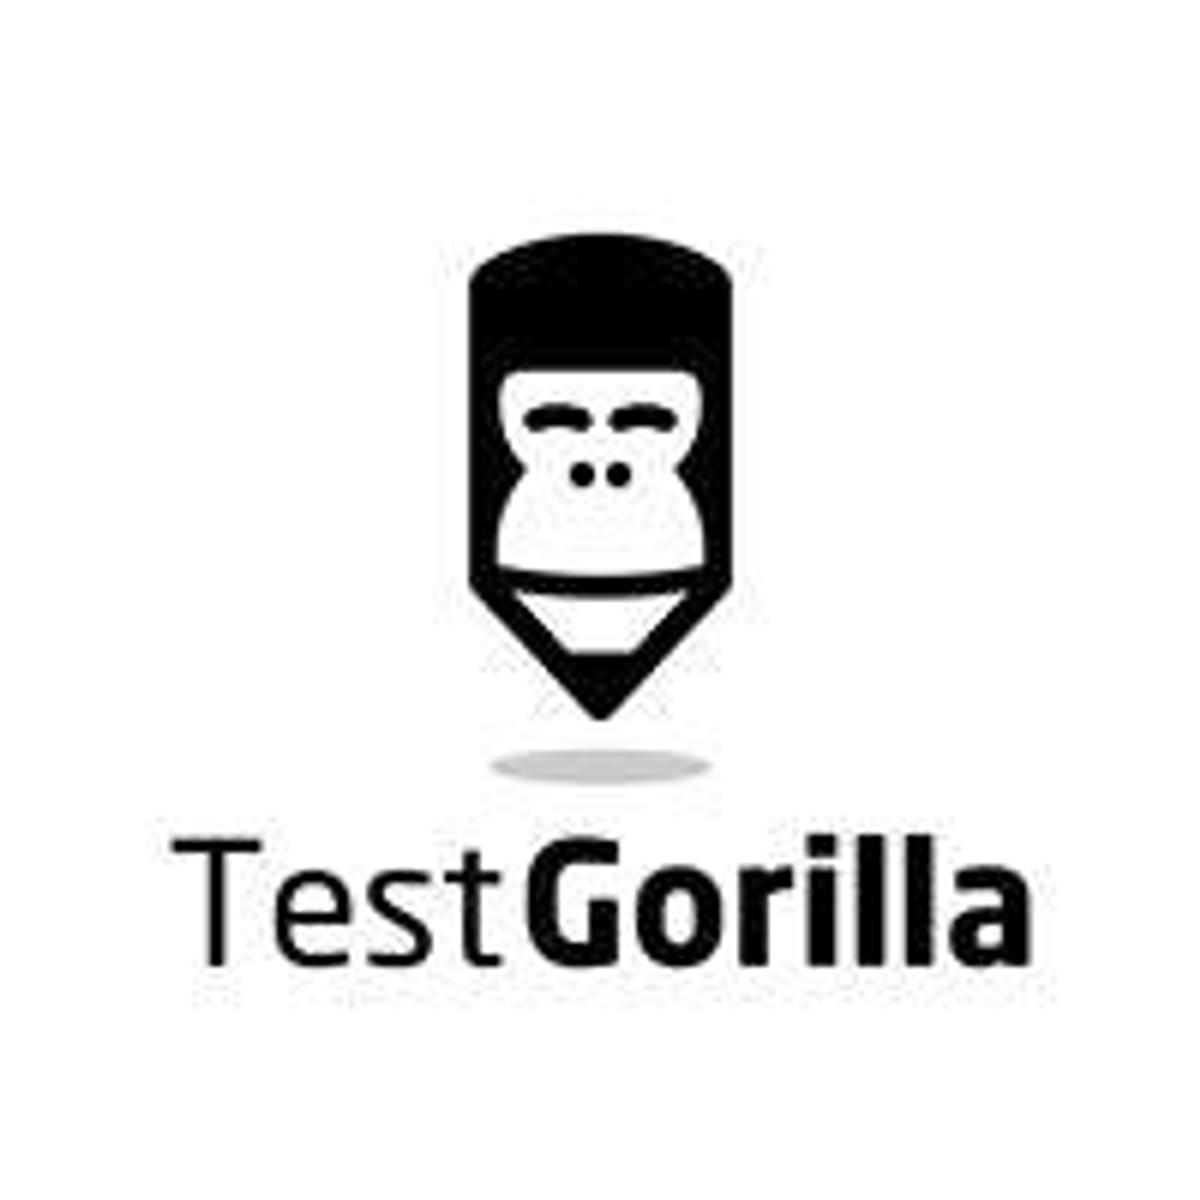 Pre-selectie platform TestGorilla voor HR Professionals haalt kapitaal op image